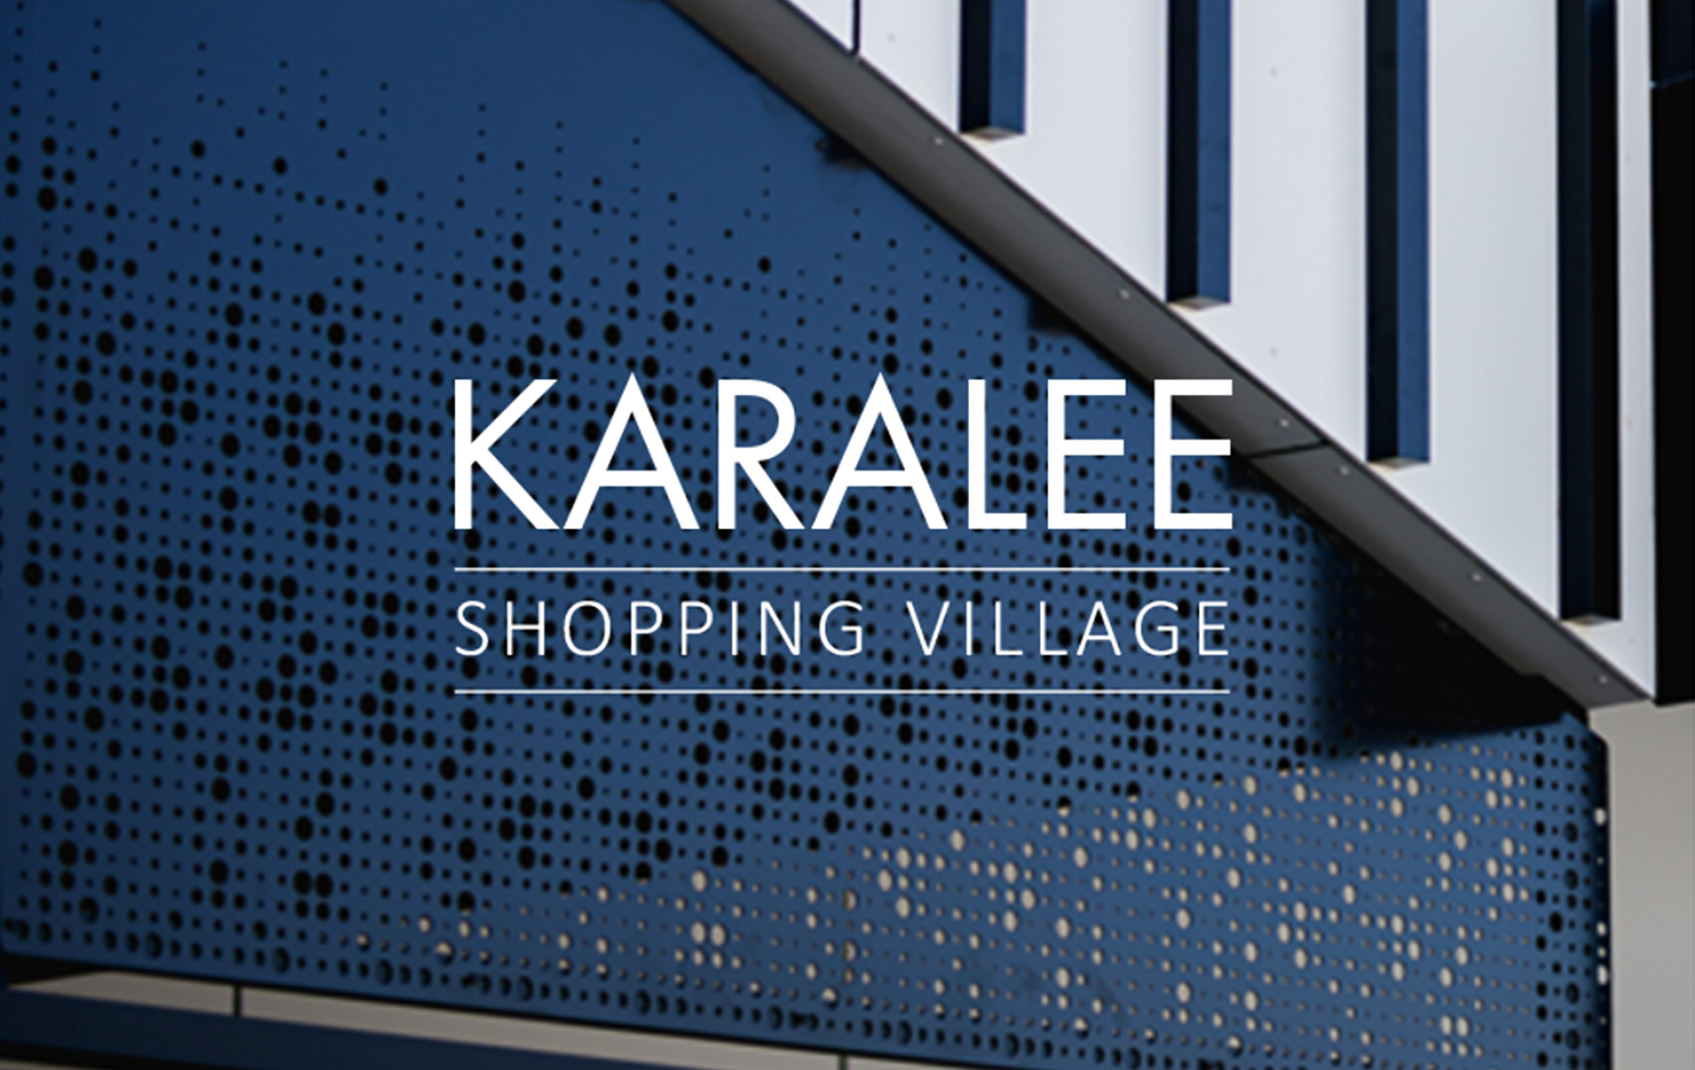 Karalee Shopping Village